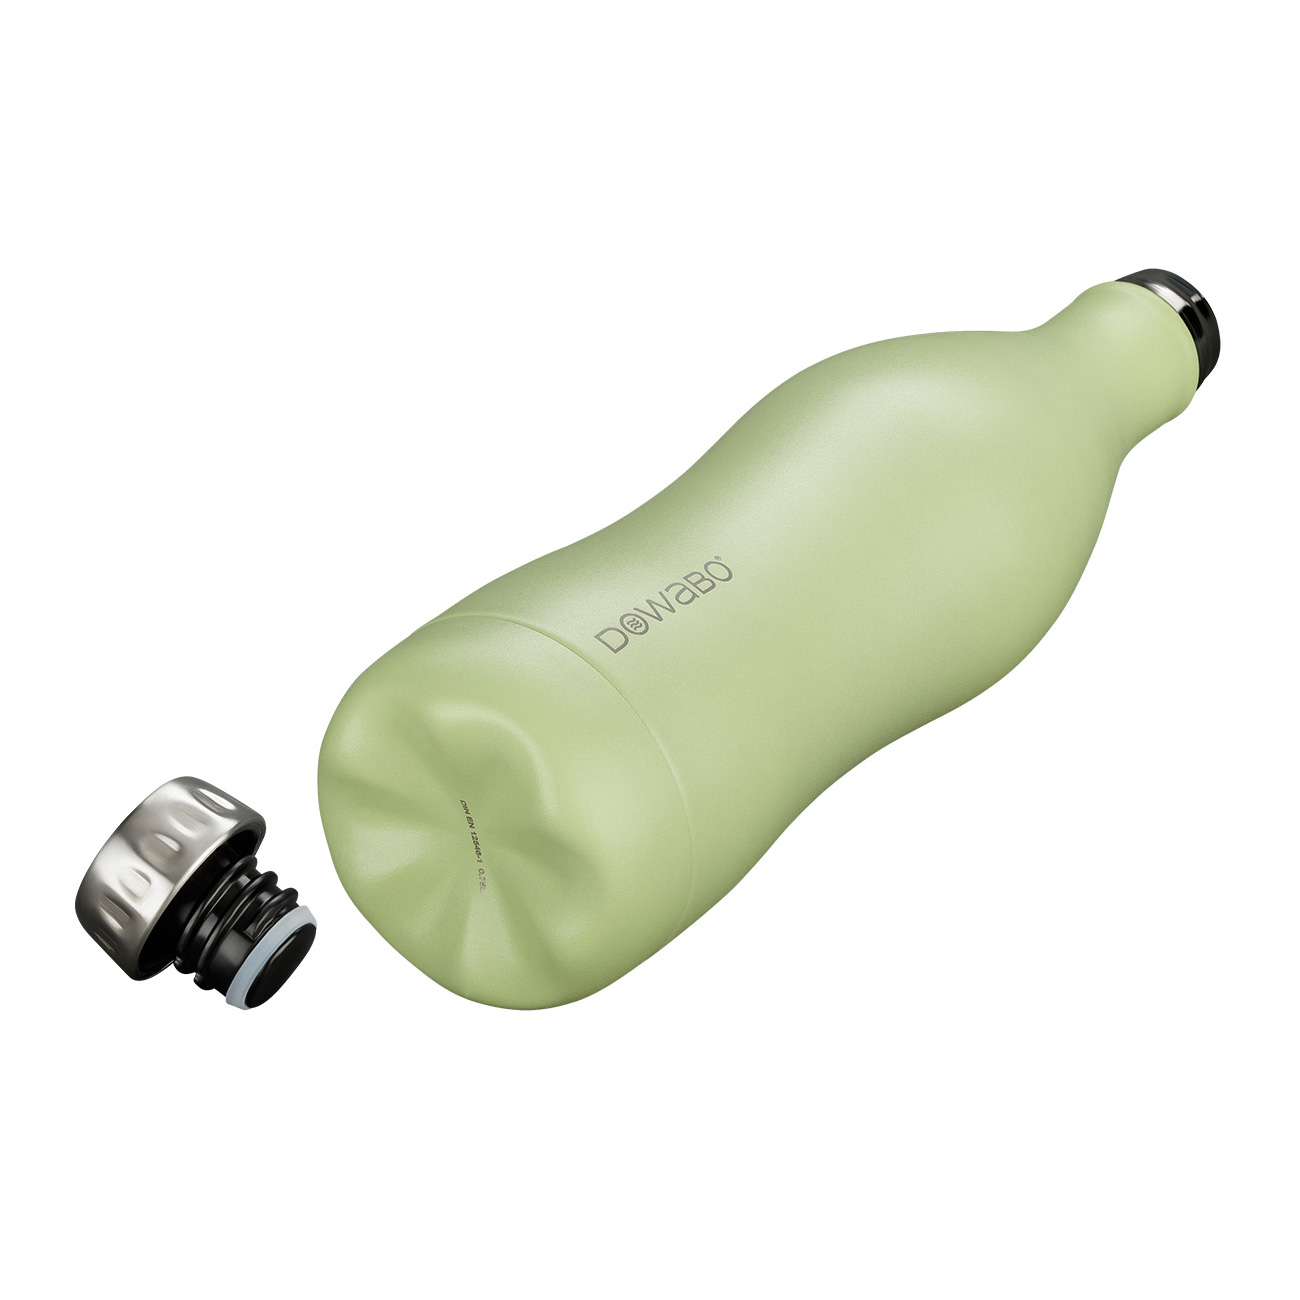 Dowabo Isolierflasche kohlensäuredicht 0,75 Liter hellgrün matt Bild 1